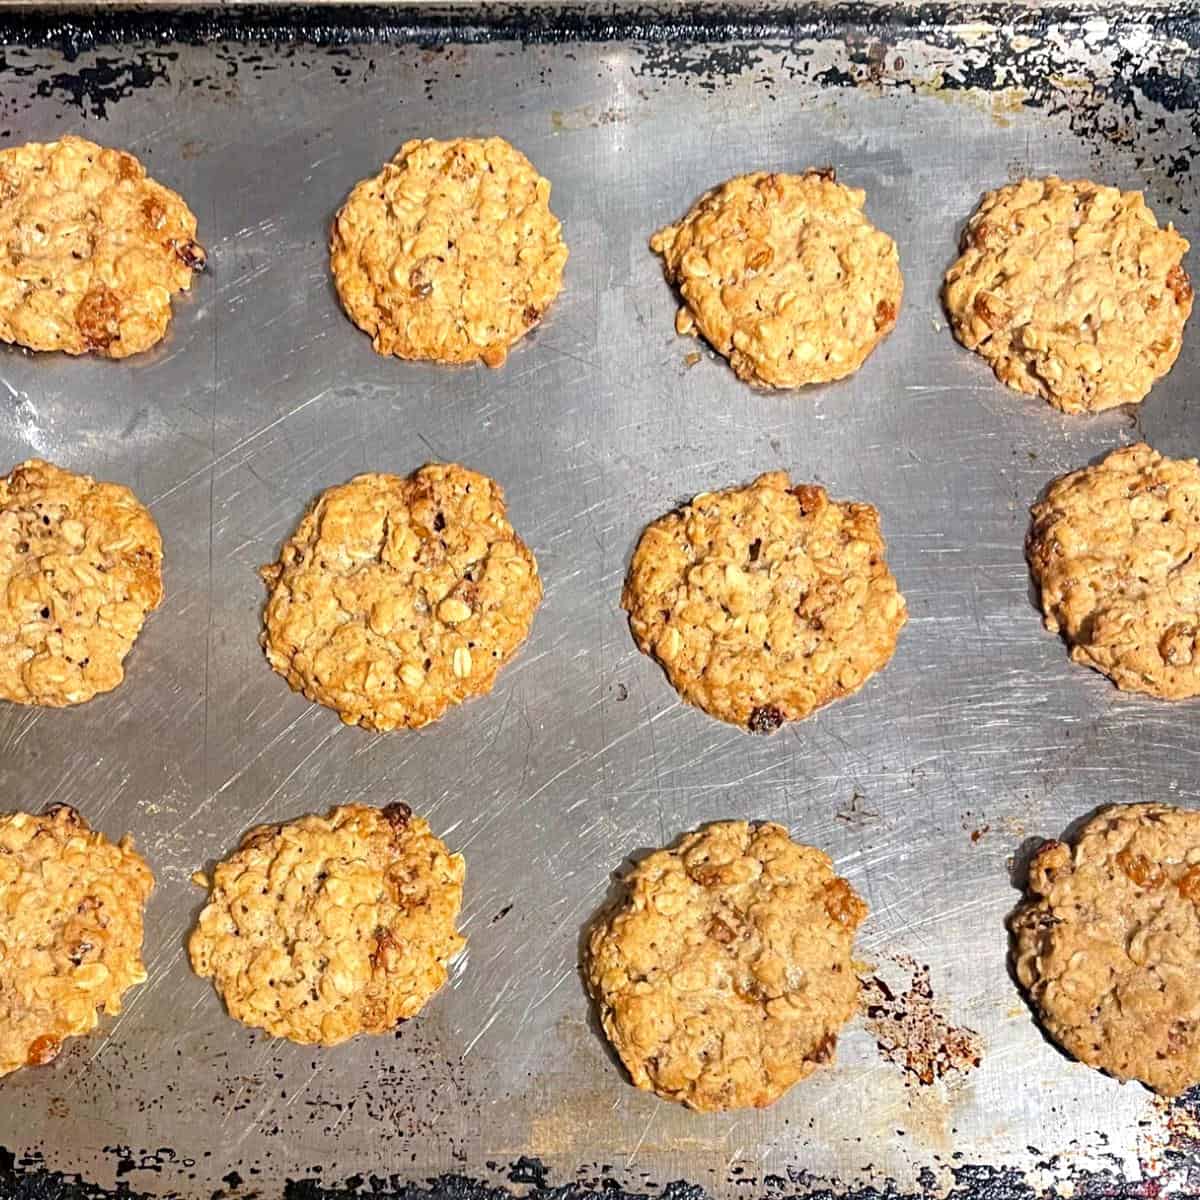 Baked vegan oatmeal cookies on cookie sheet.